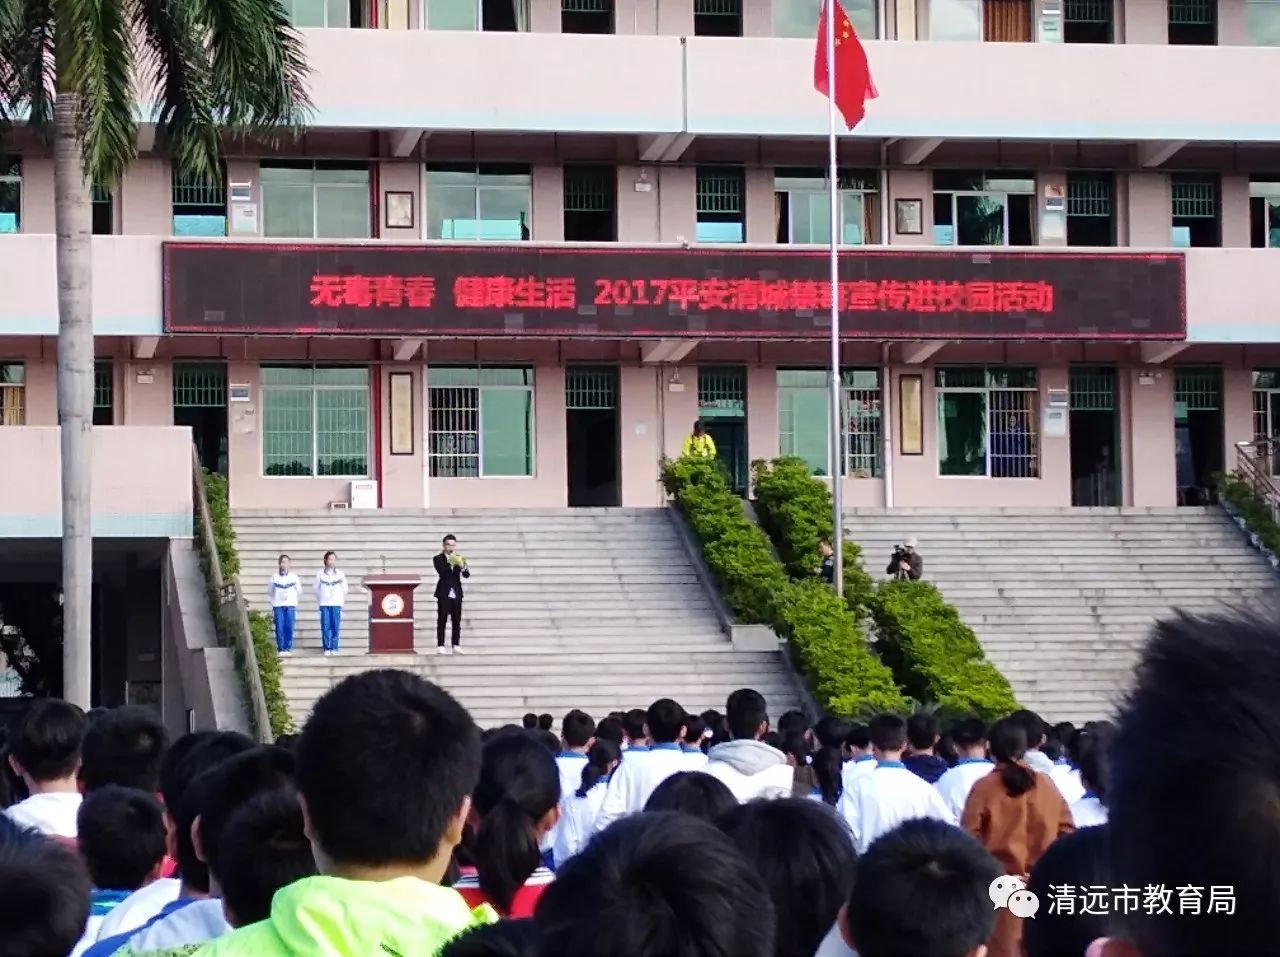 无毒青春,健康生活——2017平安清城禁毒宣传走进松岗中学